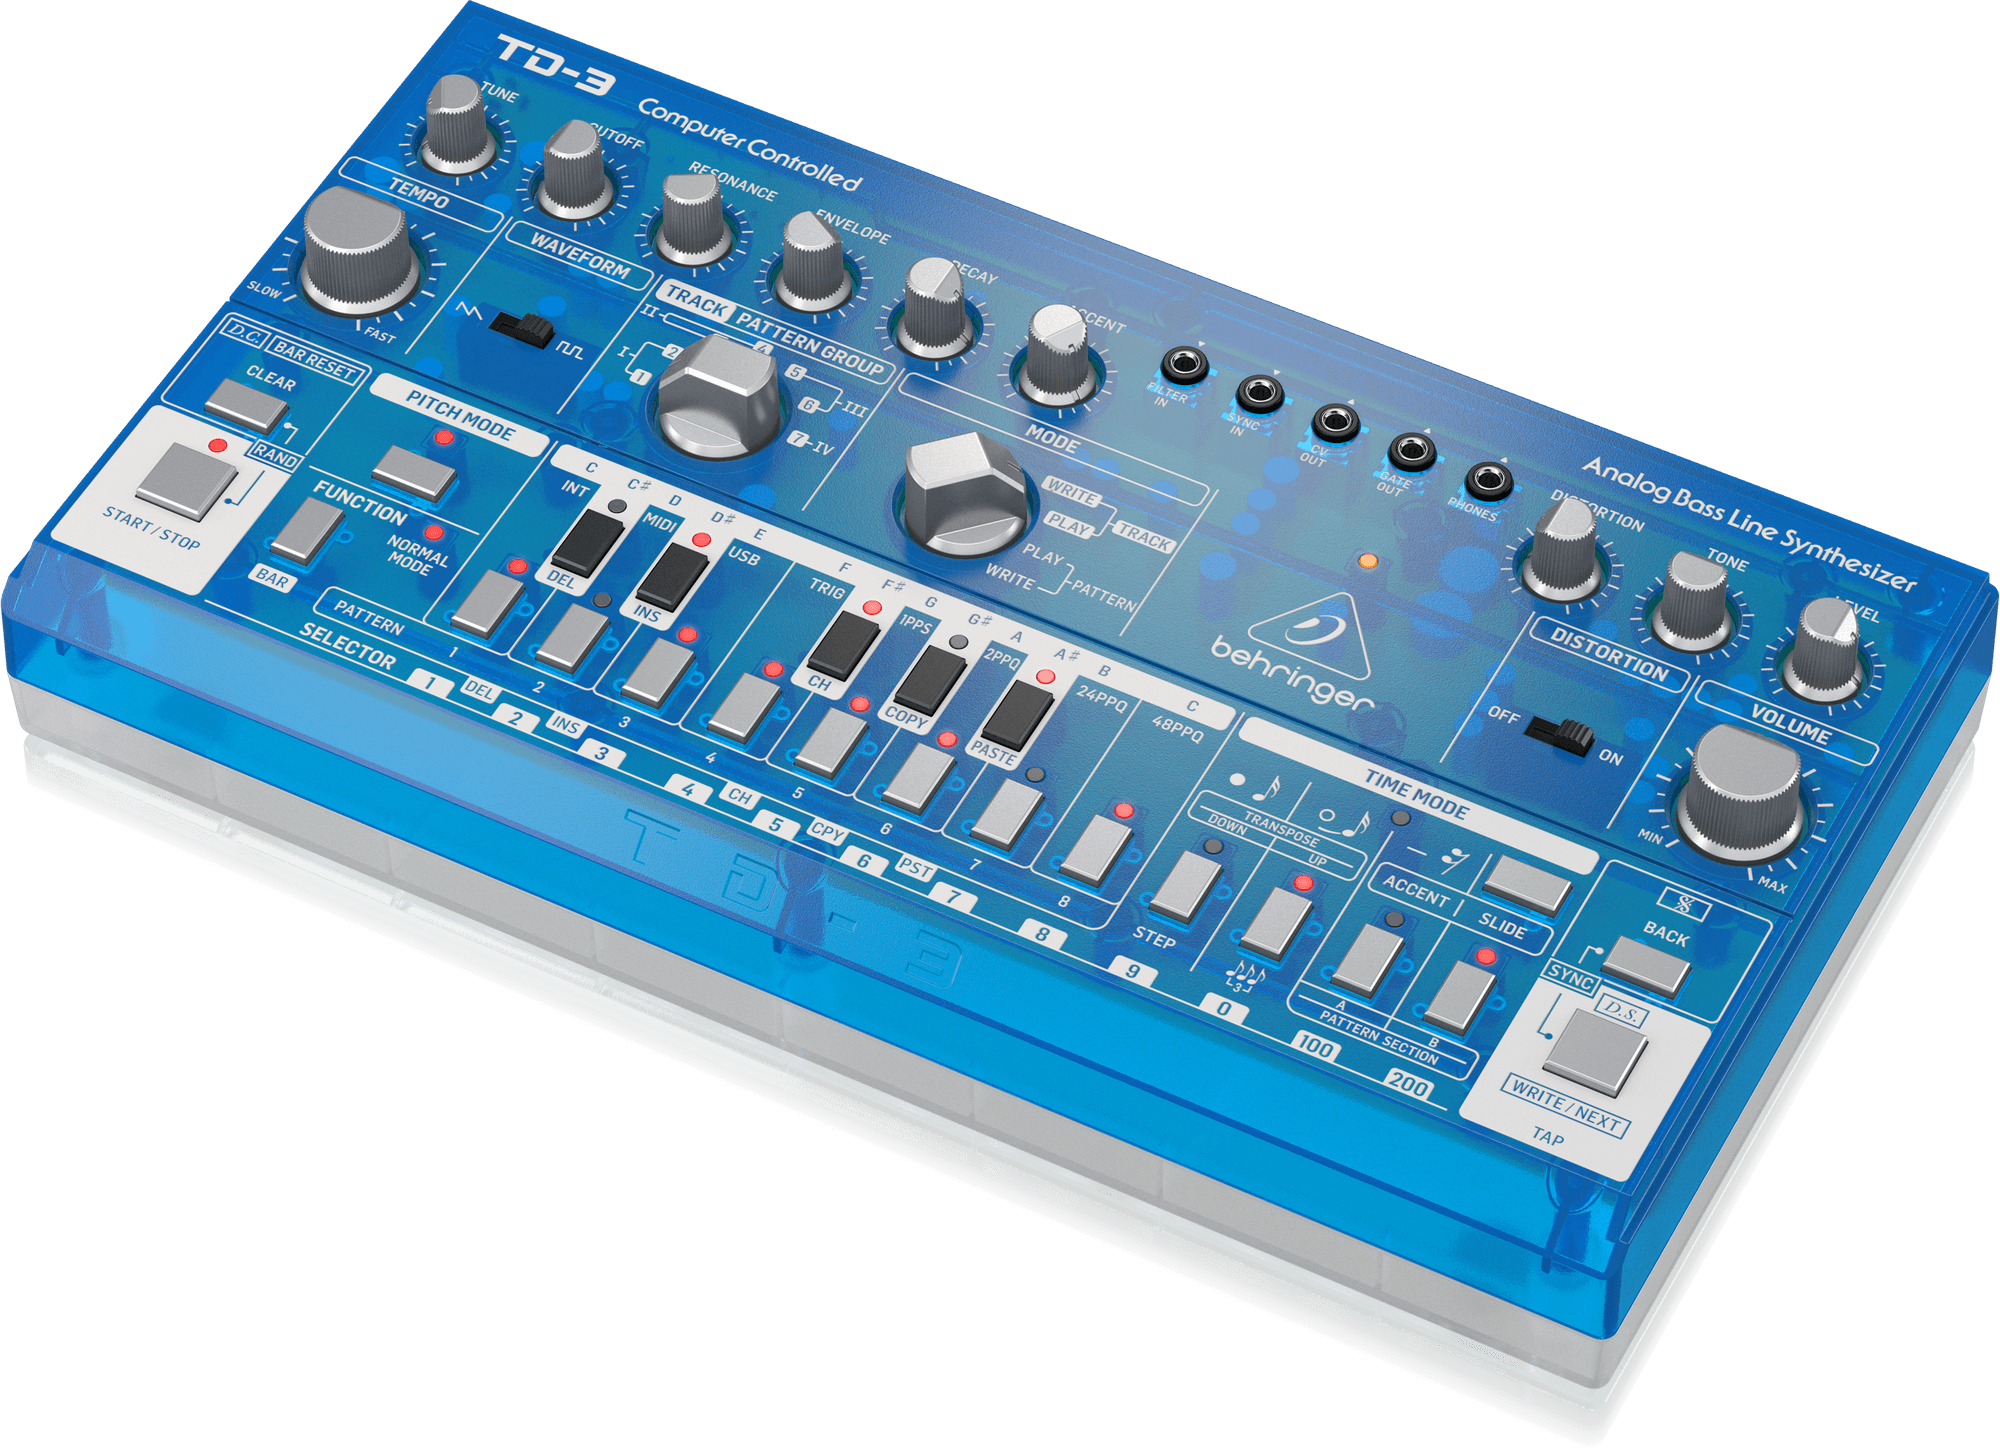 Behringer TD-3-BB басовый синтезатор, встроенный дисторшн, VCO, VCF, VCA, 16-шаговый секвенсор, 16 голосов. Синий